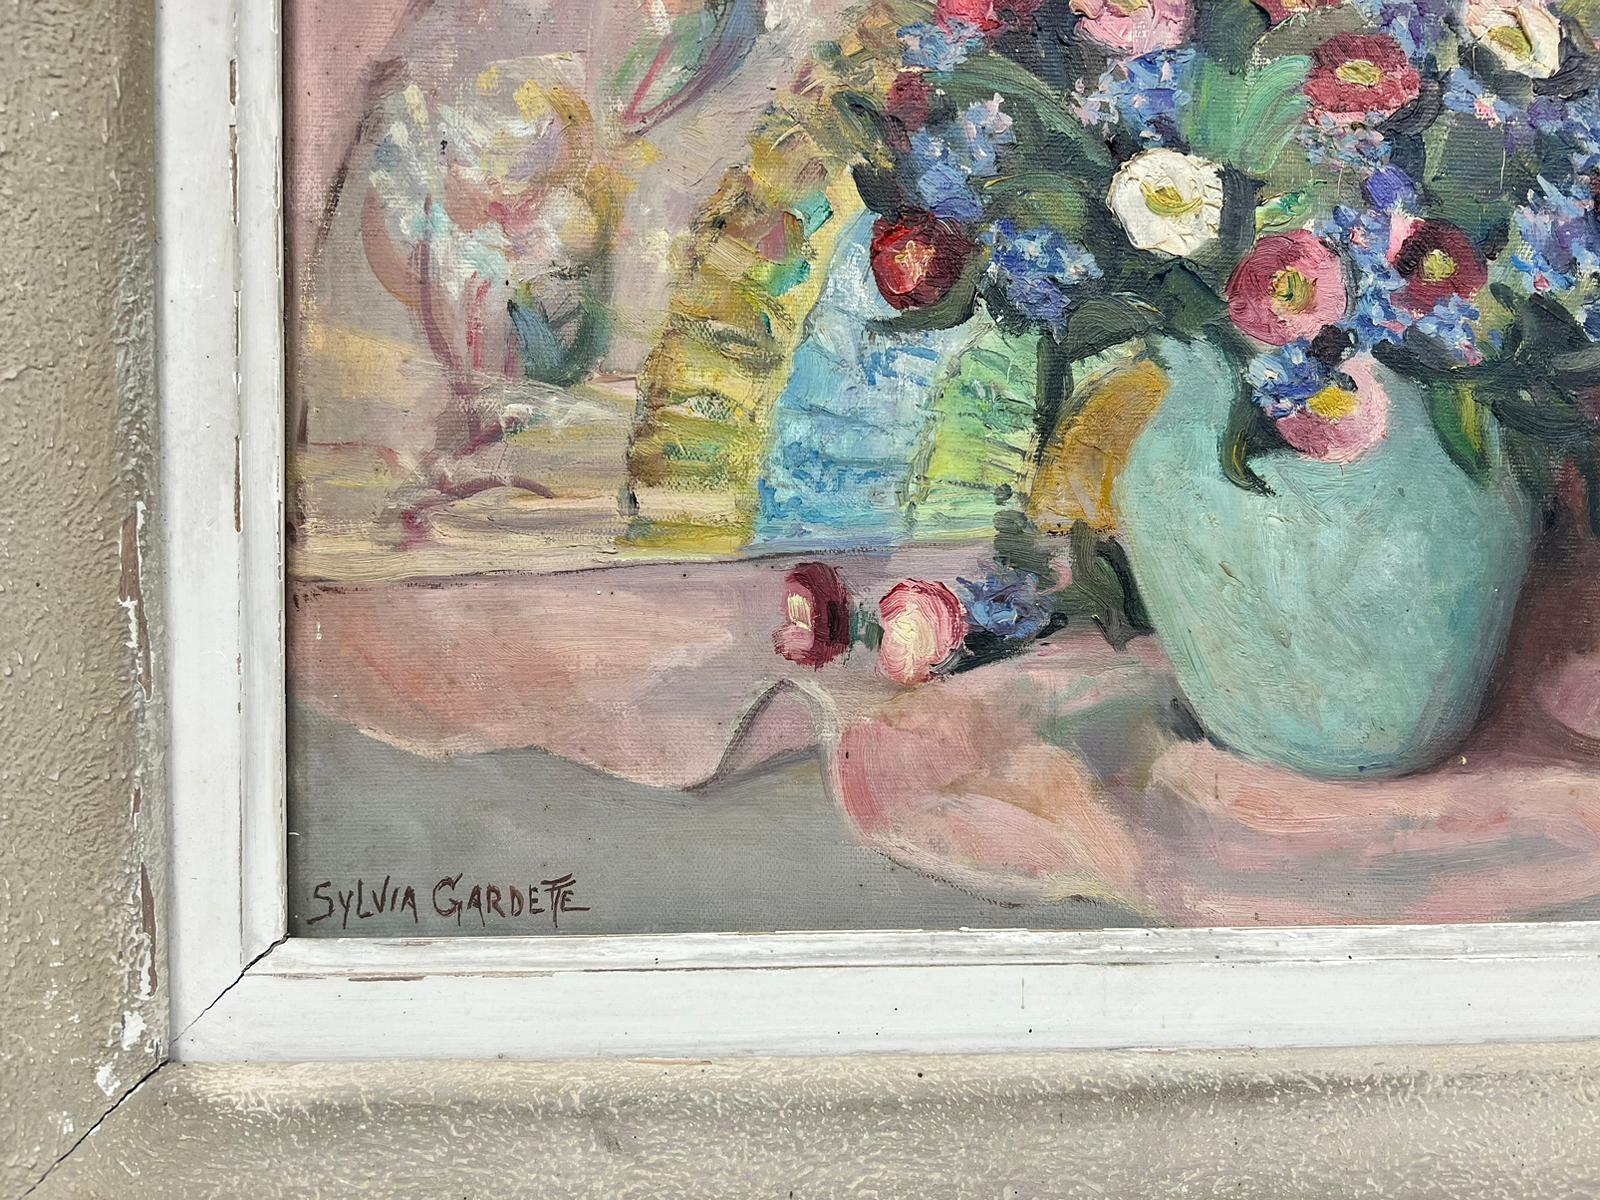 Französische signierte Ölvase mit schönen Blumen in Teal, Rosa Rücken, Mitte des 20. Jahrhunderts (Post-Impressionismus), Painting, von 20th Century French School